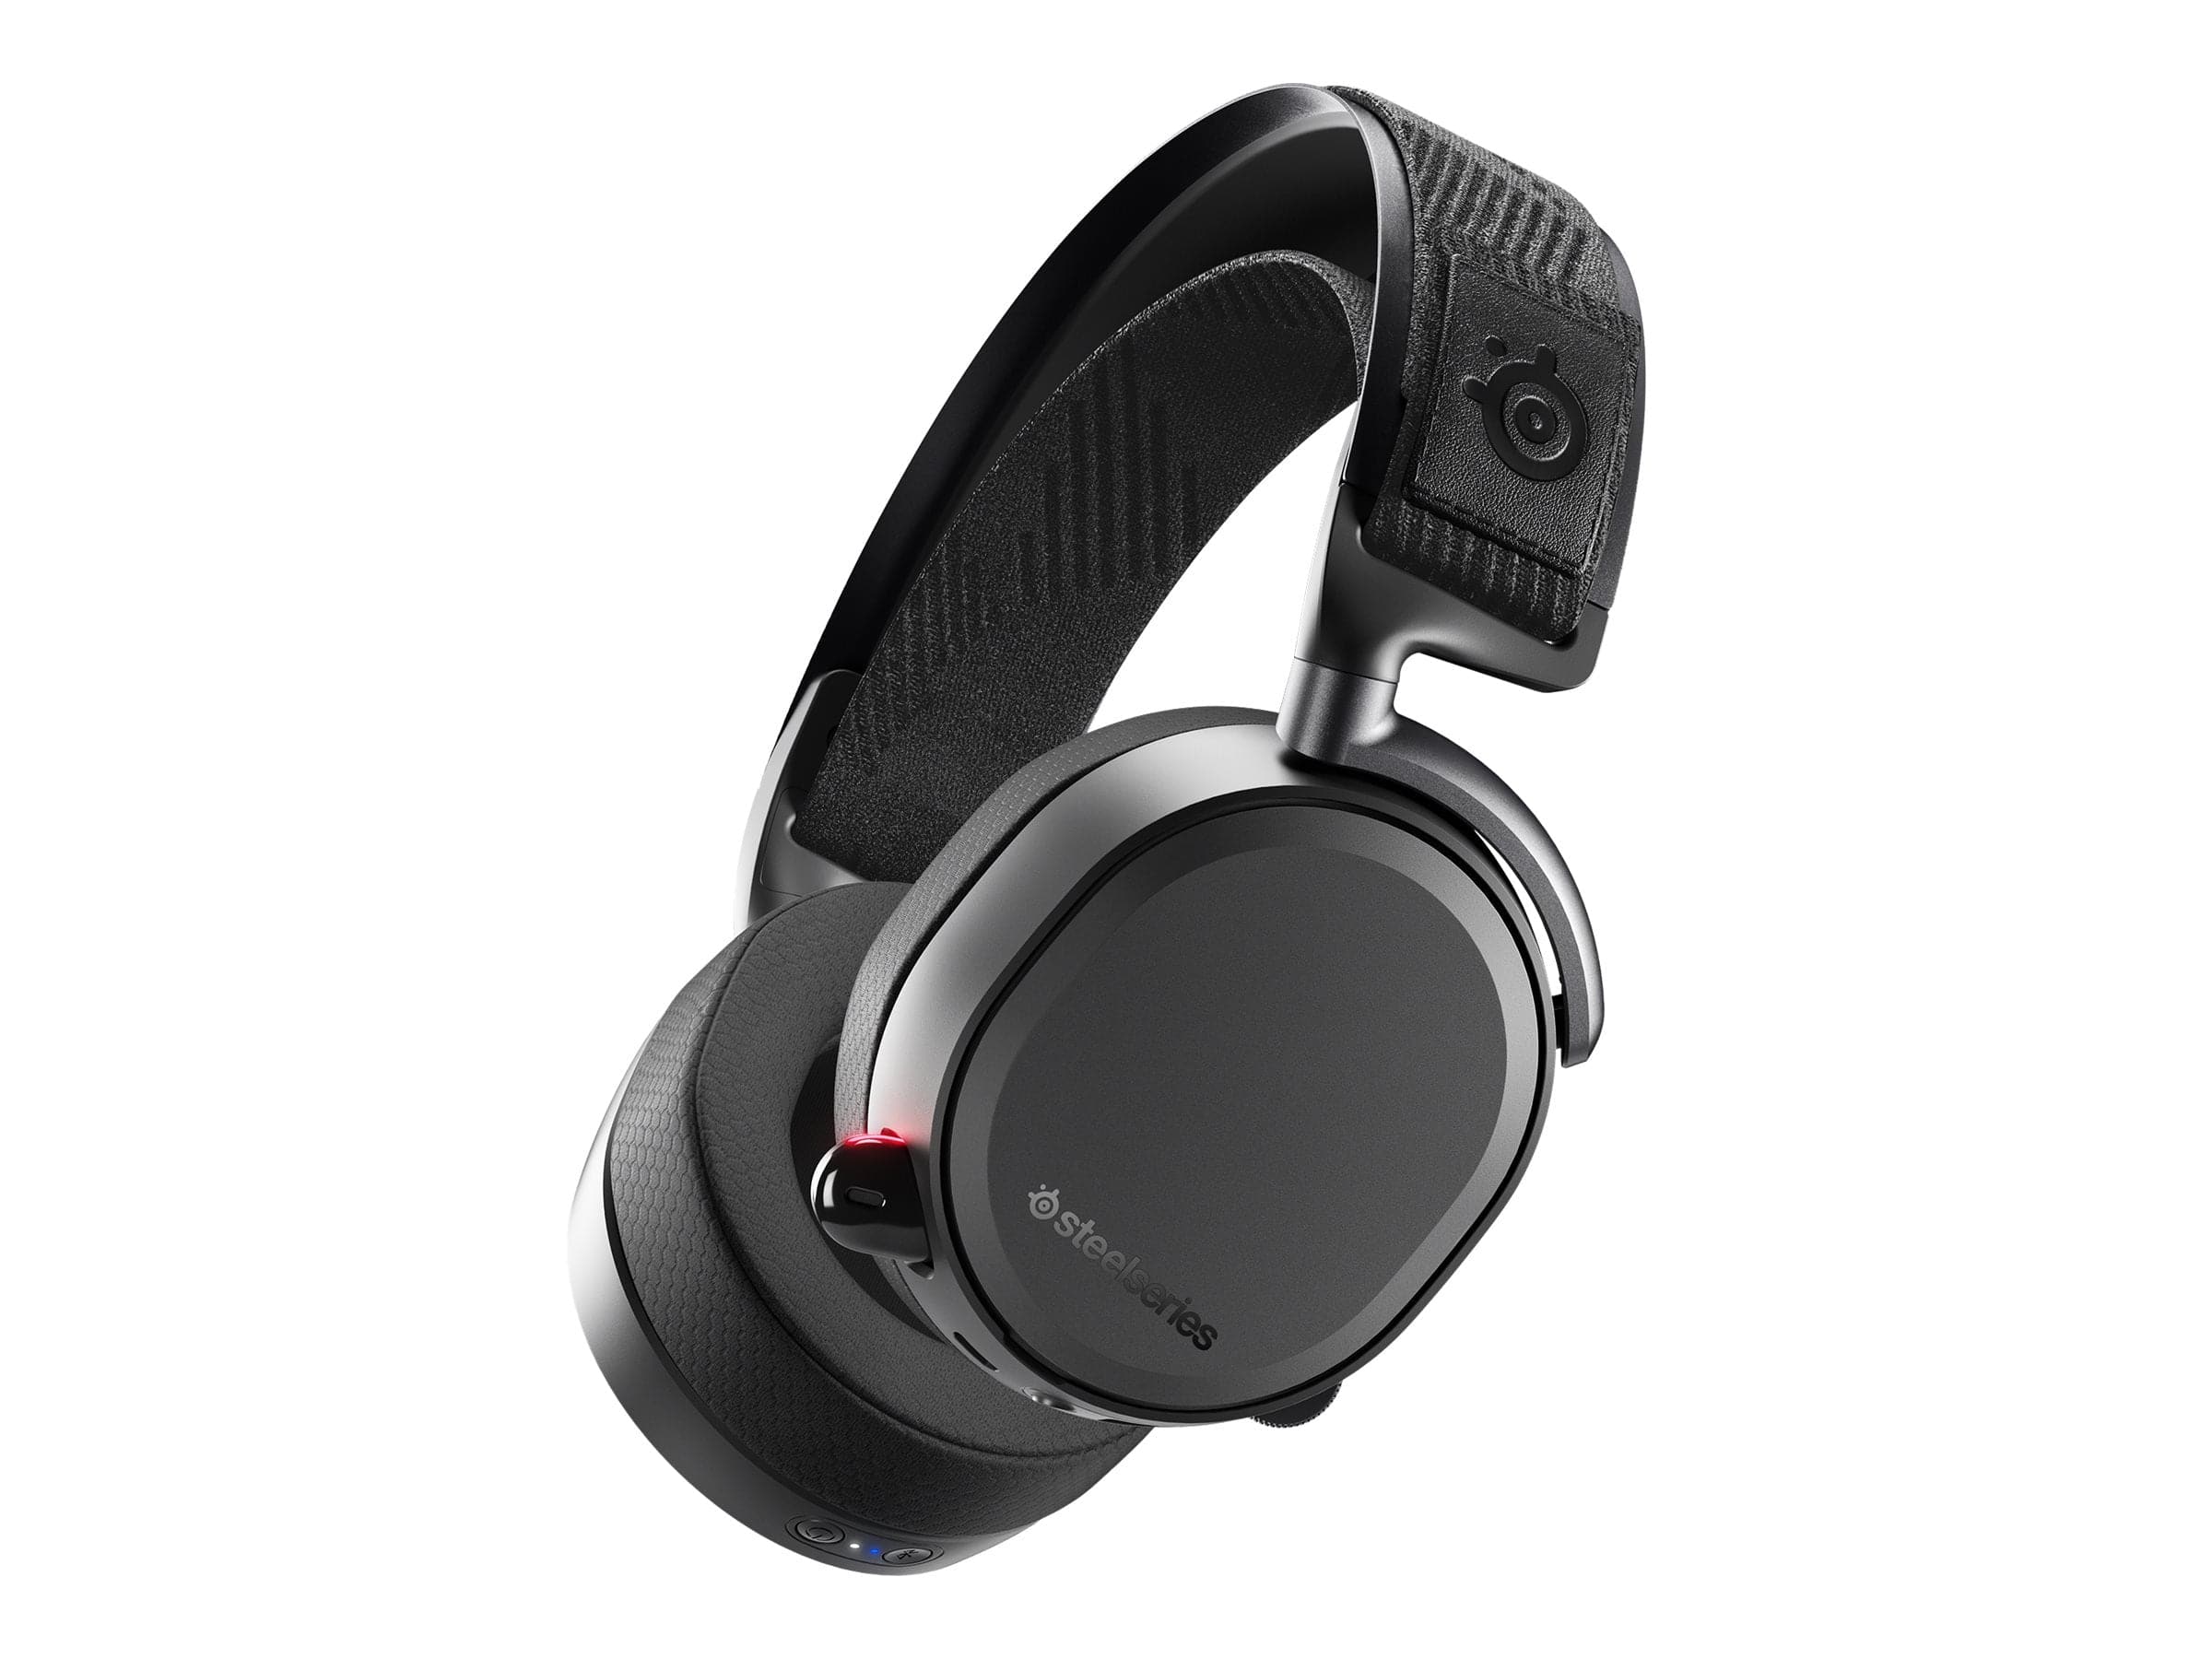 SteelSeries Arctis Pro trådlöst headset